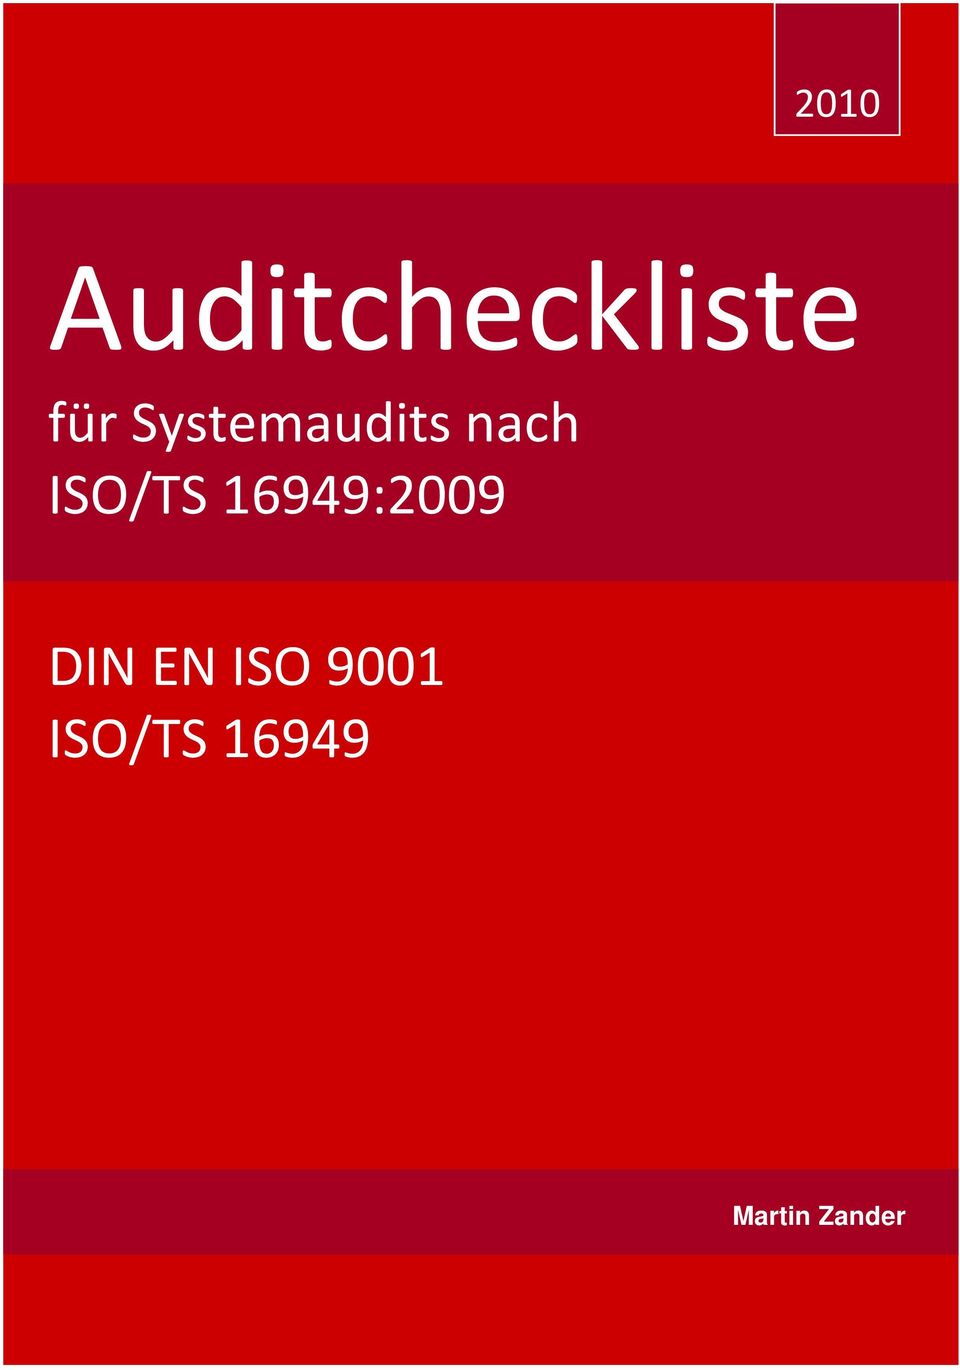 16949:2009 DIN EN ISO